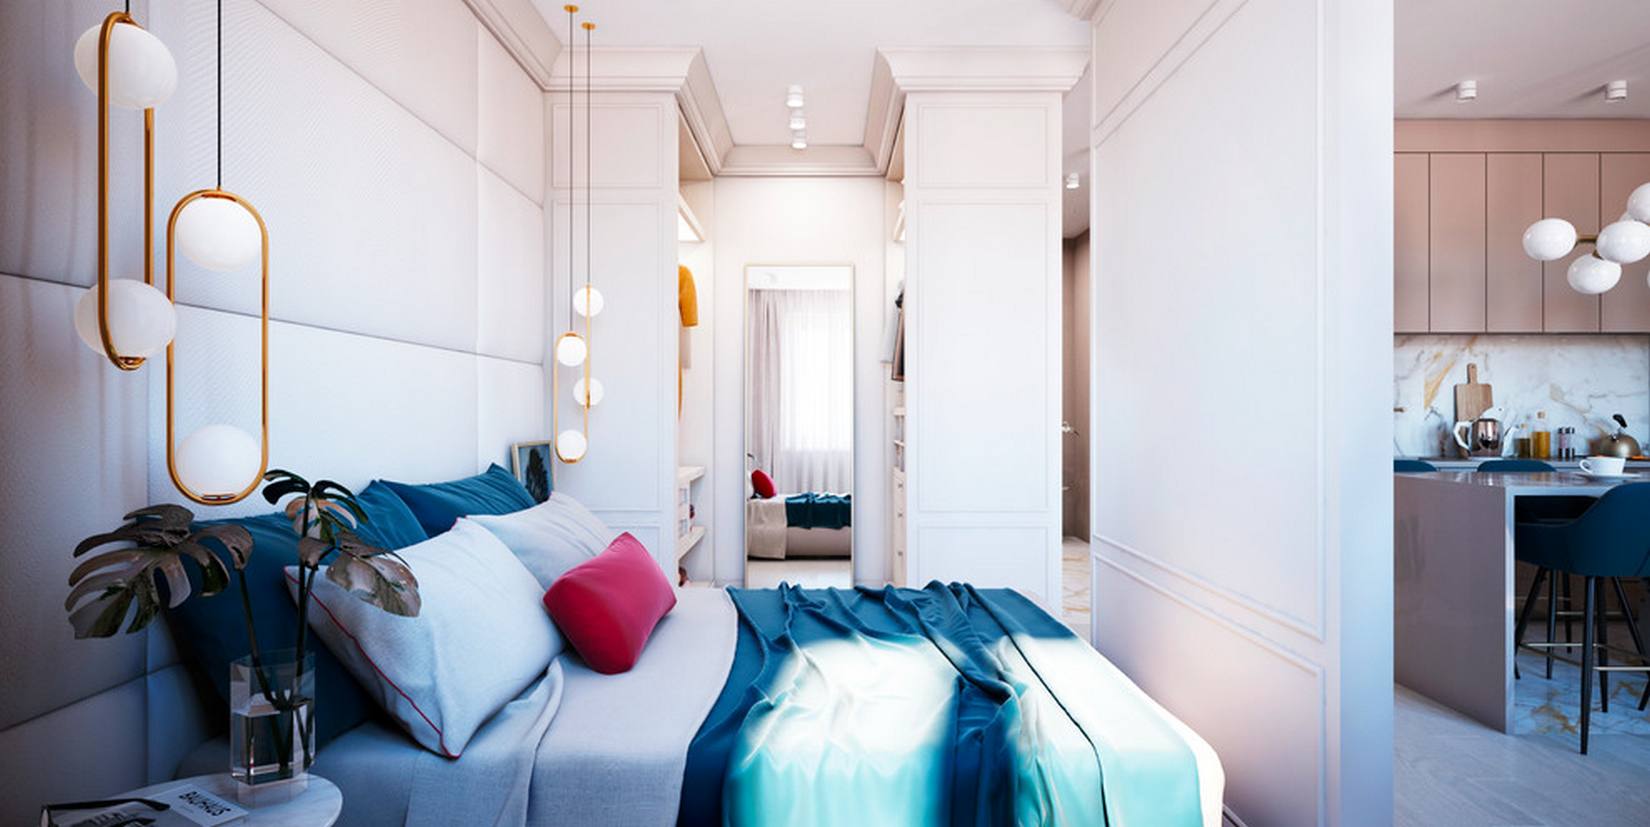 Gối chăn trên giường cũng rực rỡ nhiều màu sắc, hệ thống đèn thả trần và táp đầu giường bố trí đối xứng tạo nên sự hài hòa, cân đối cho phòng ngủ. Phía bên kia của bức tường, phòng thay đồ bố trí tấm gương lớn giúp không gian như được 'nhân đôi'.